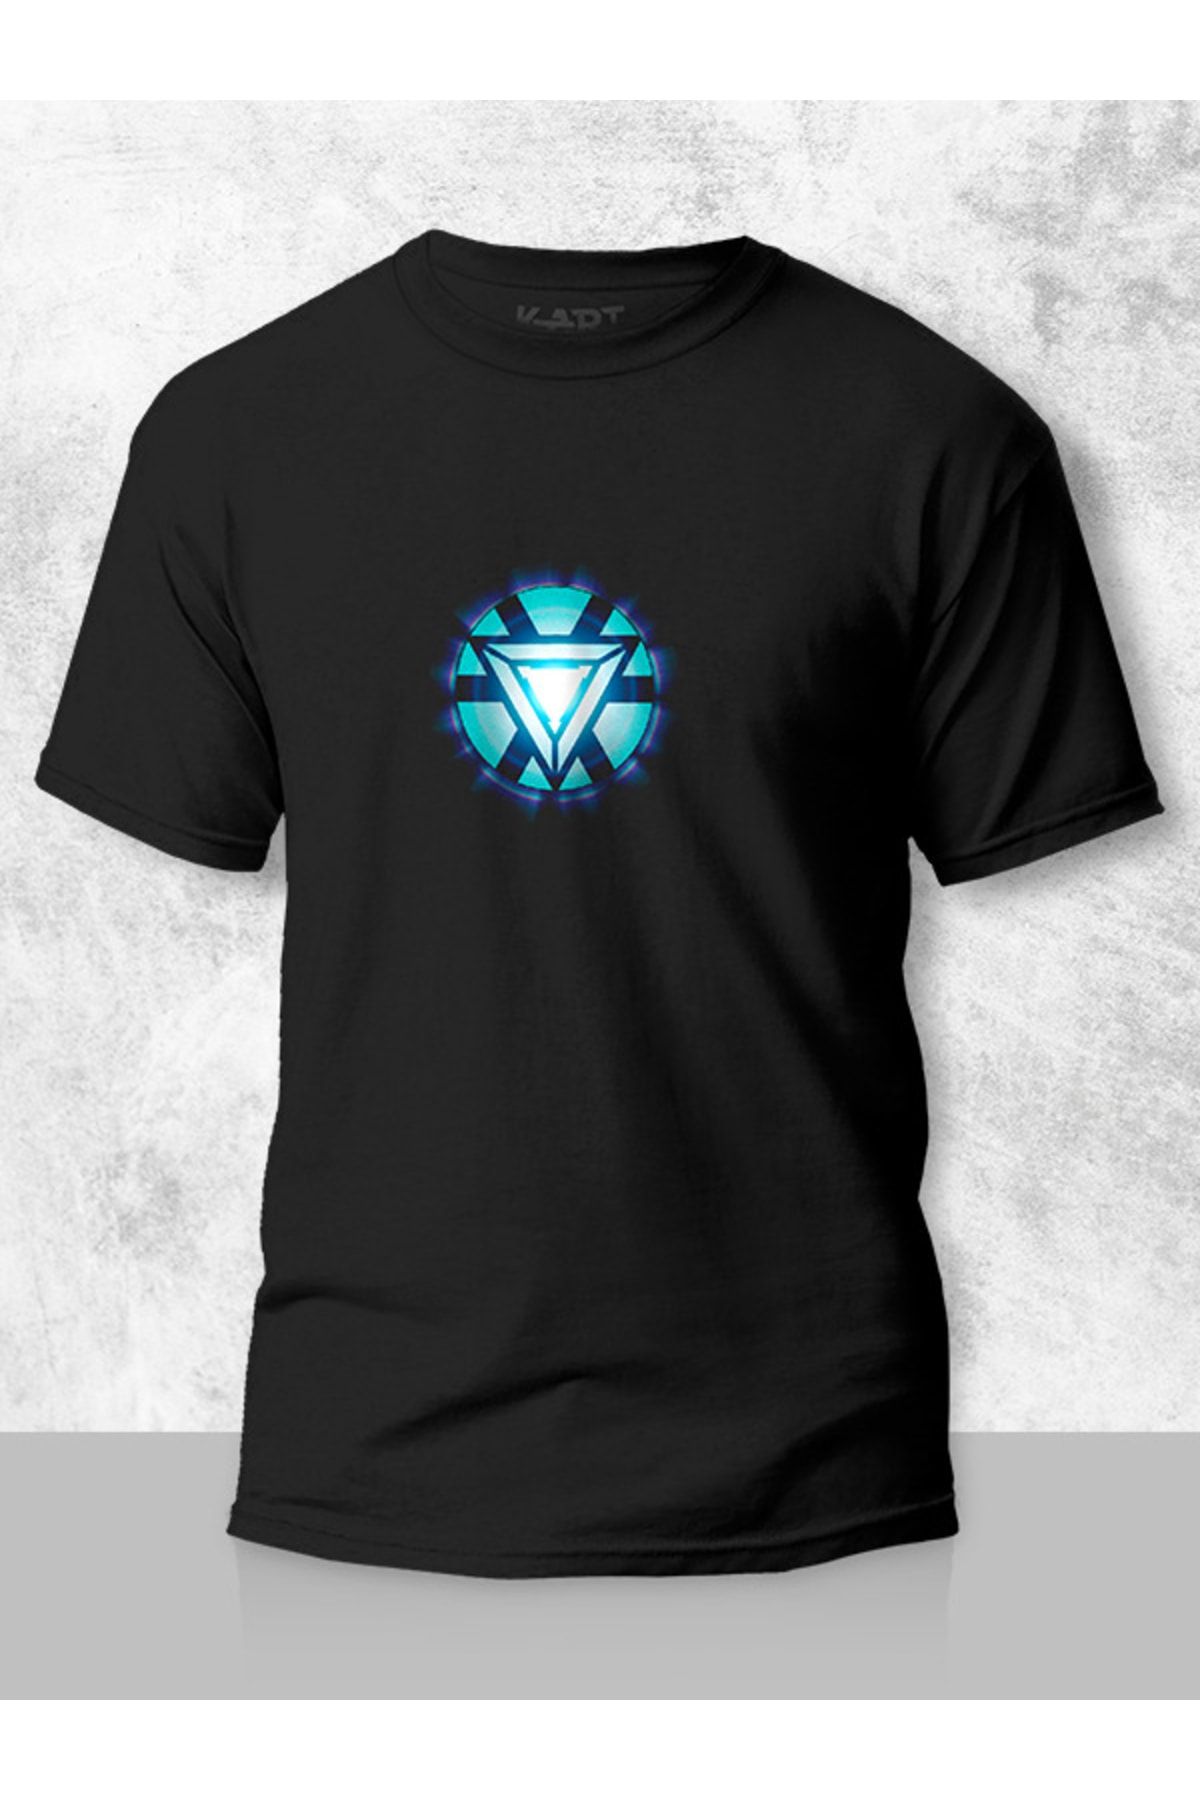 Tişört Baskı K-art Giyim Unisex Siyah Marvel Iron Man Arc Reactor Tasarımlı Kişiye Özel Tişört